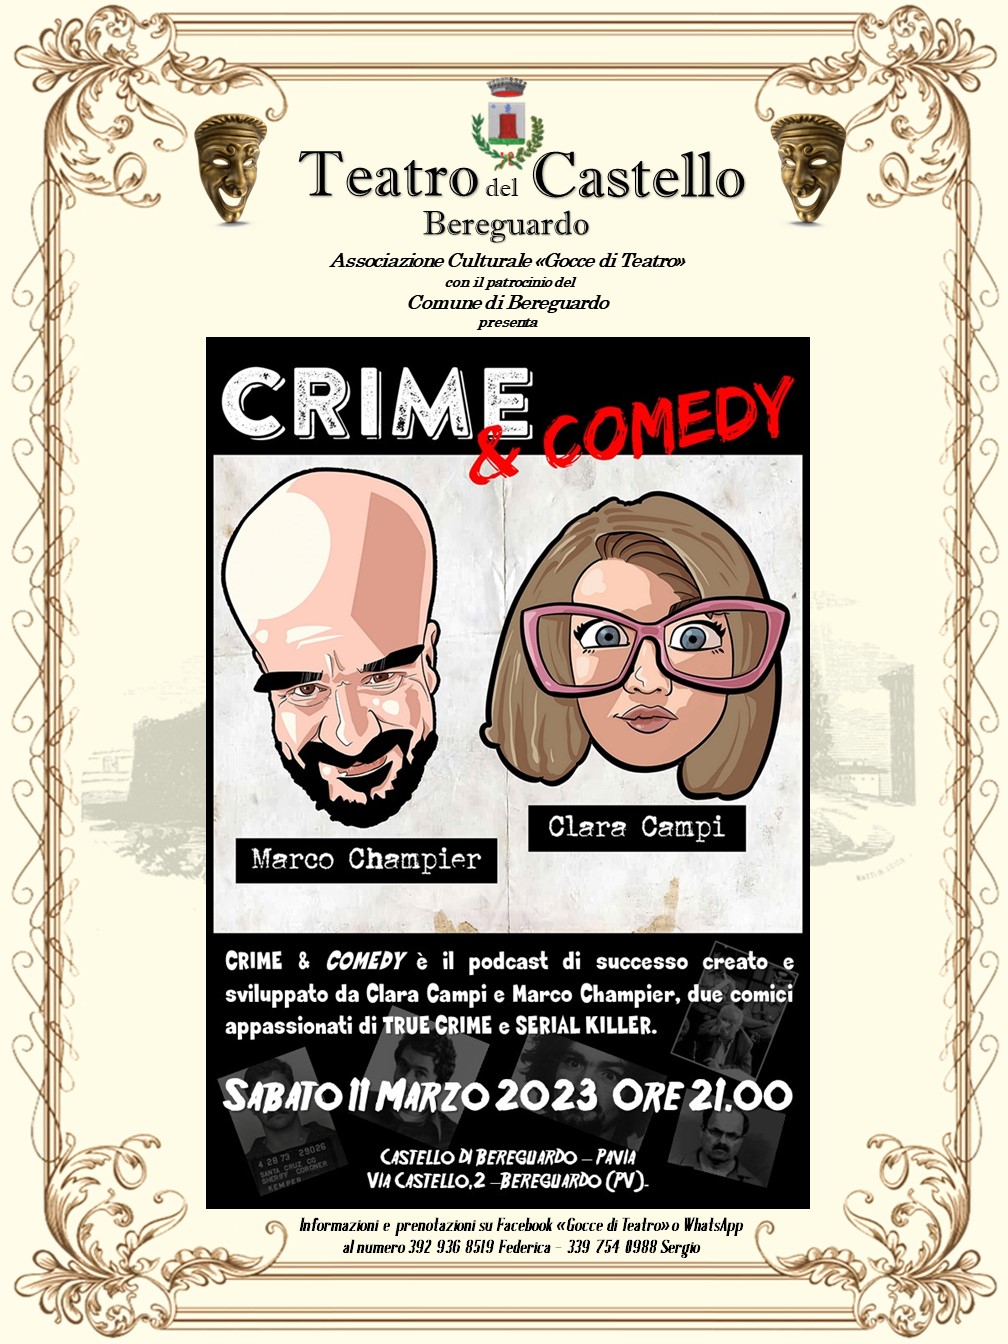 Crime & Comedy Live! @Teatro del Castello - Bereguardo (PV)